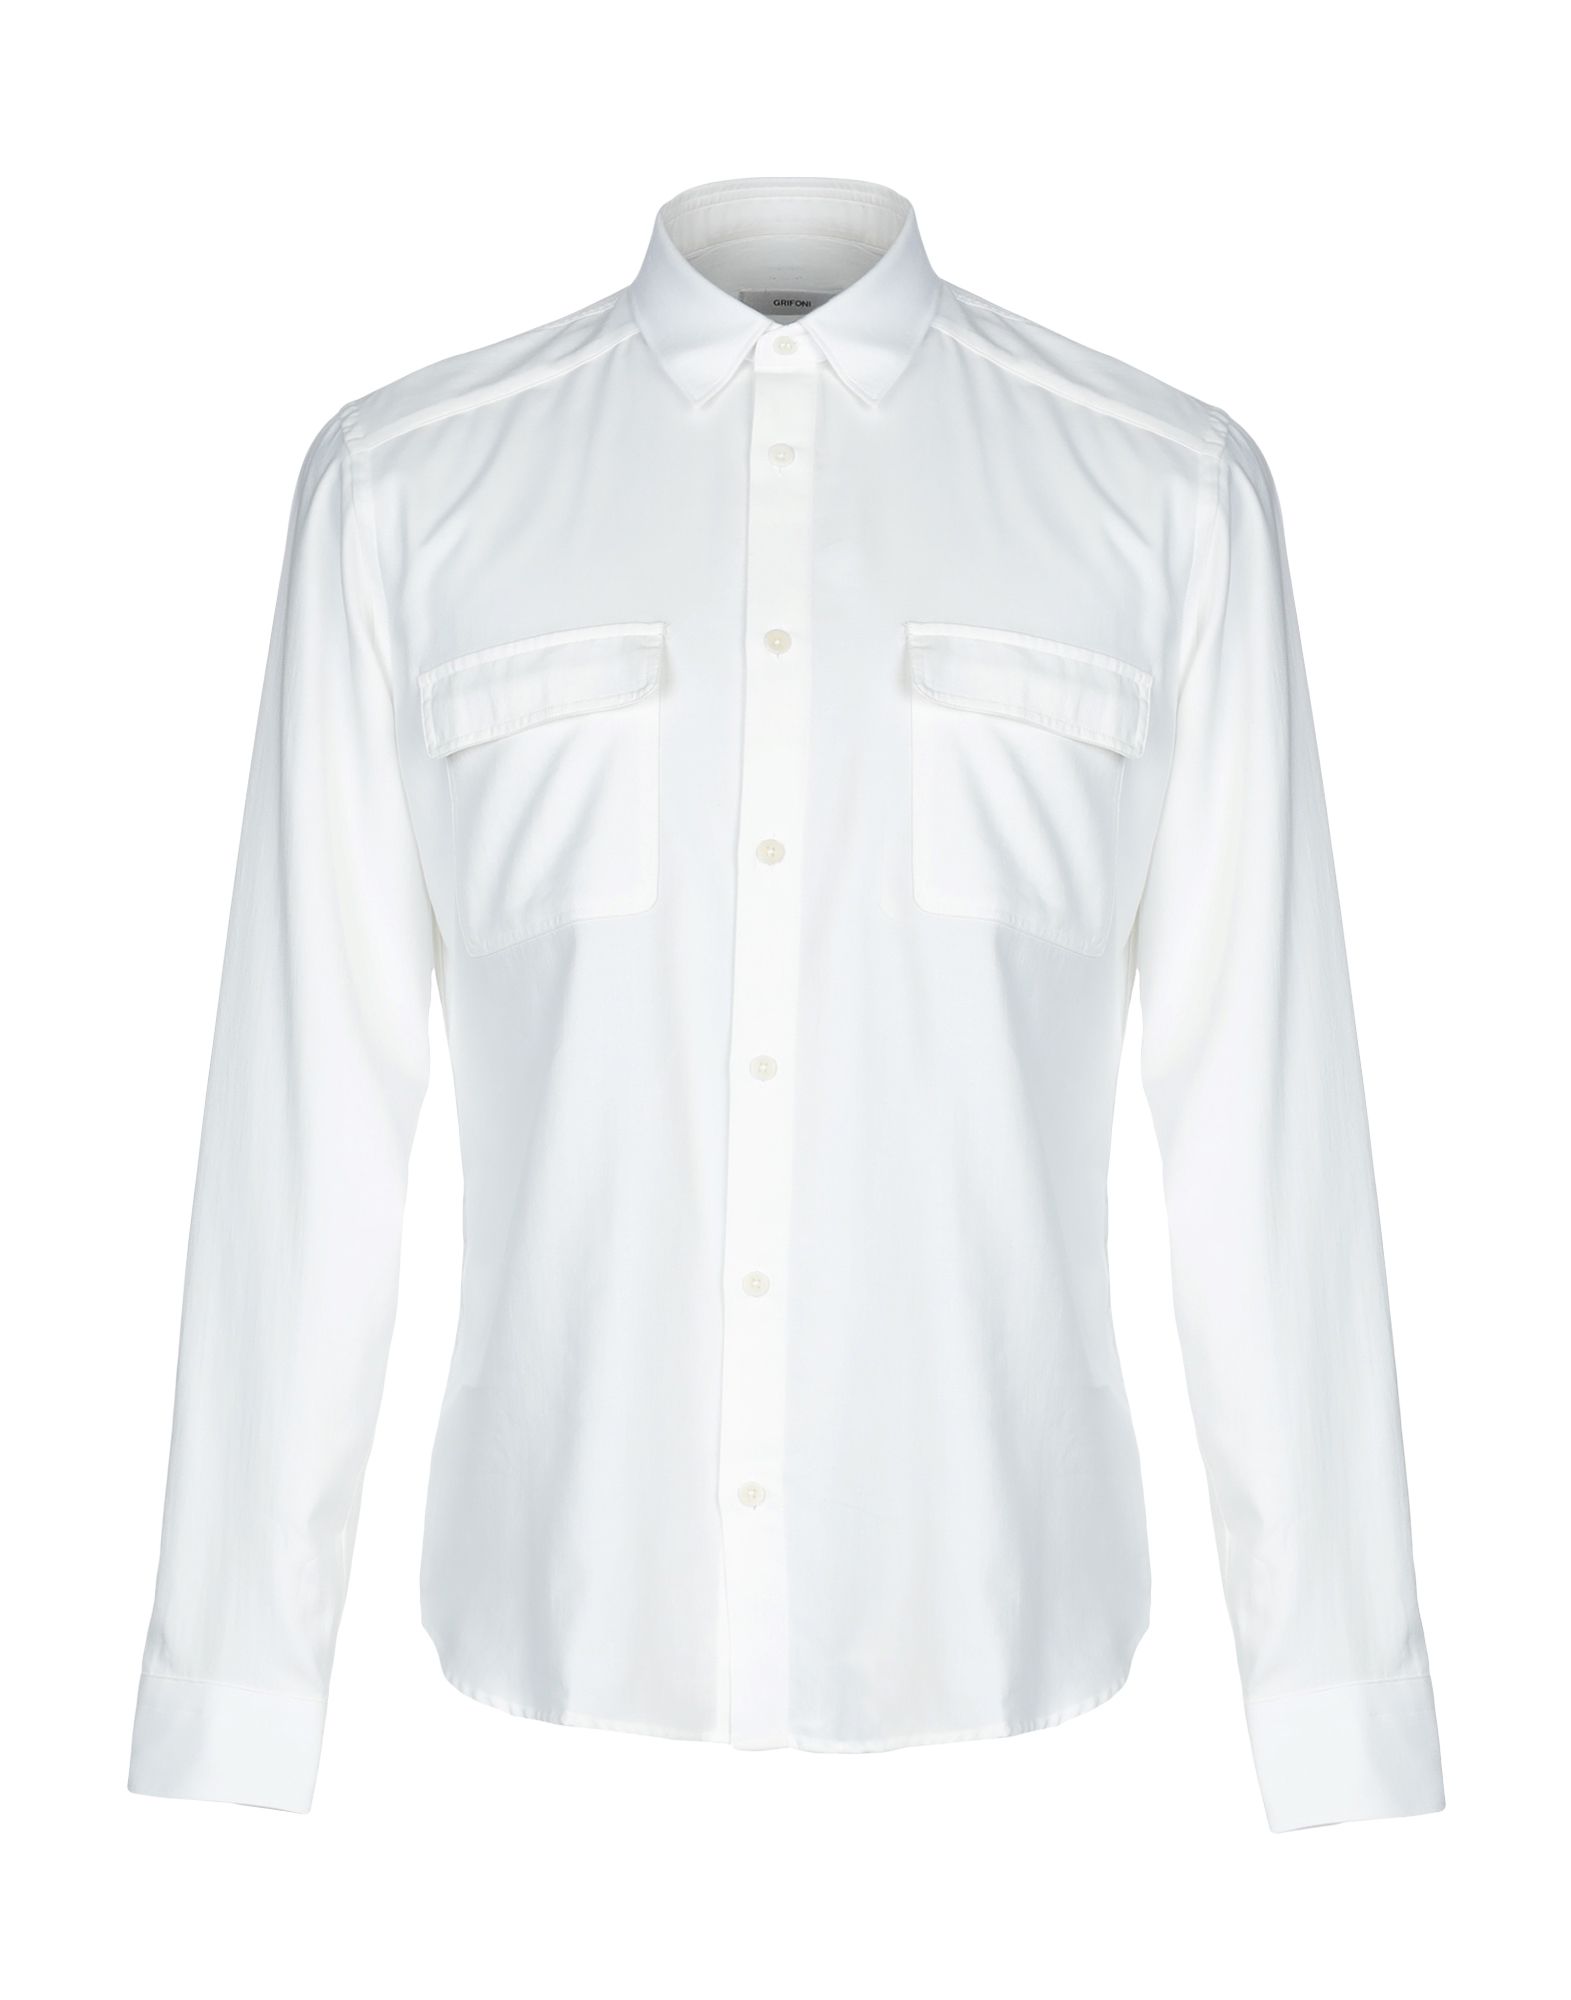 《送料無料》MAURO GRIFONI メンズ シャツ ホワイト 38 コットン 100%